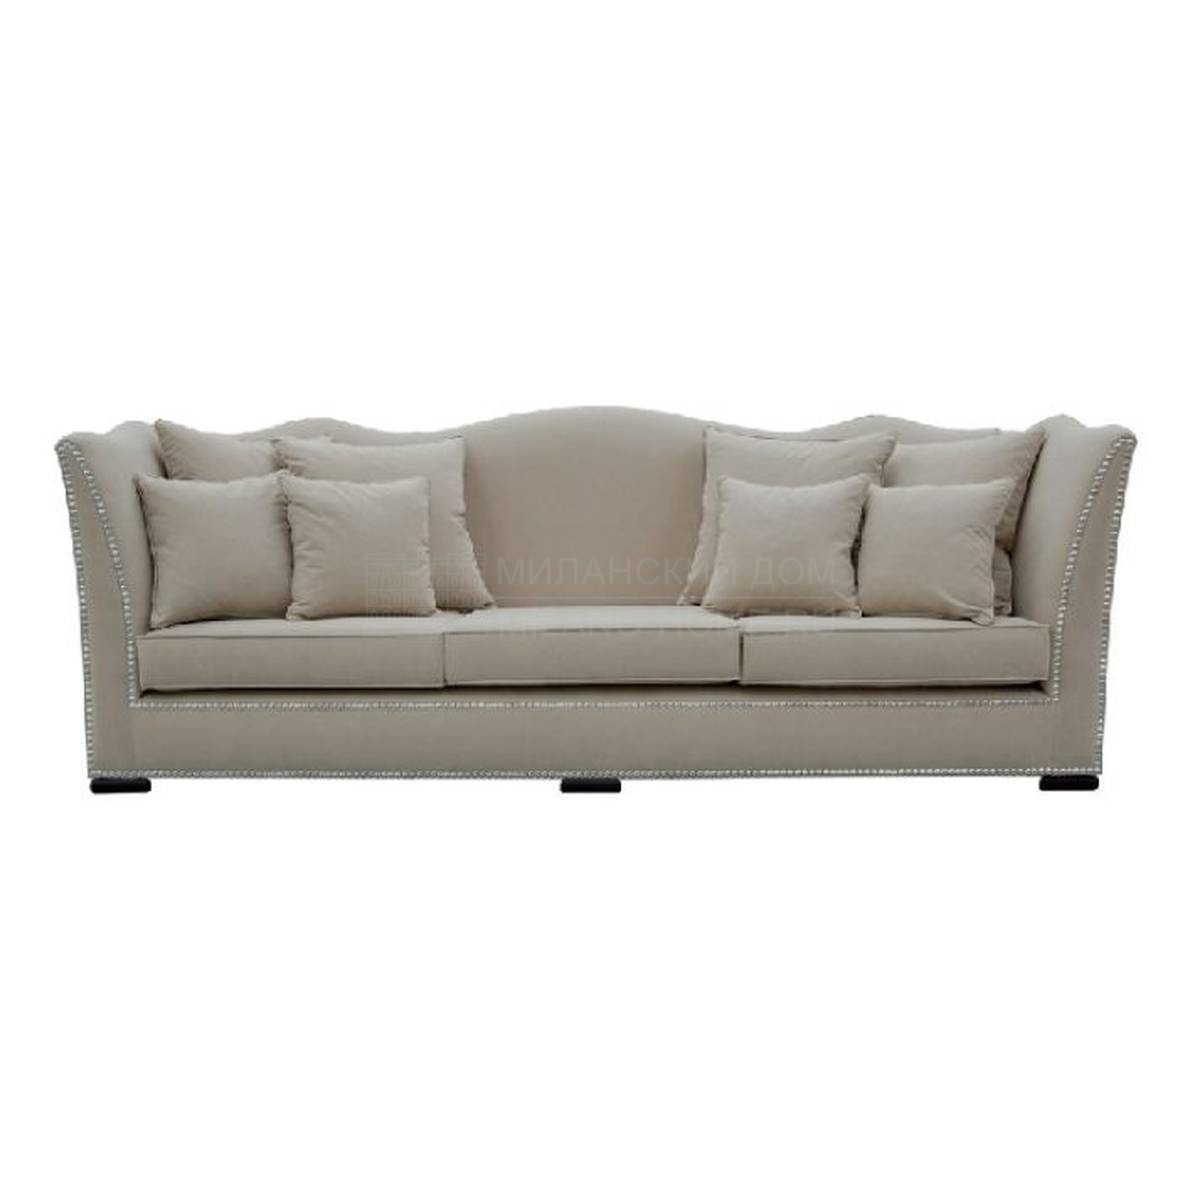 Прямой диван Z-80651 sofa из Испании фабрики GUADARTE